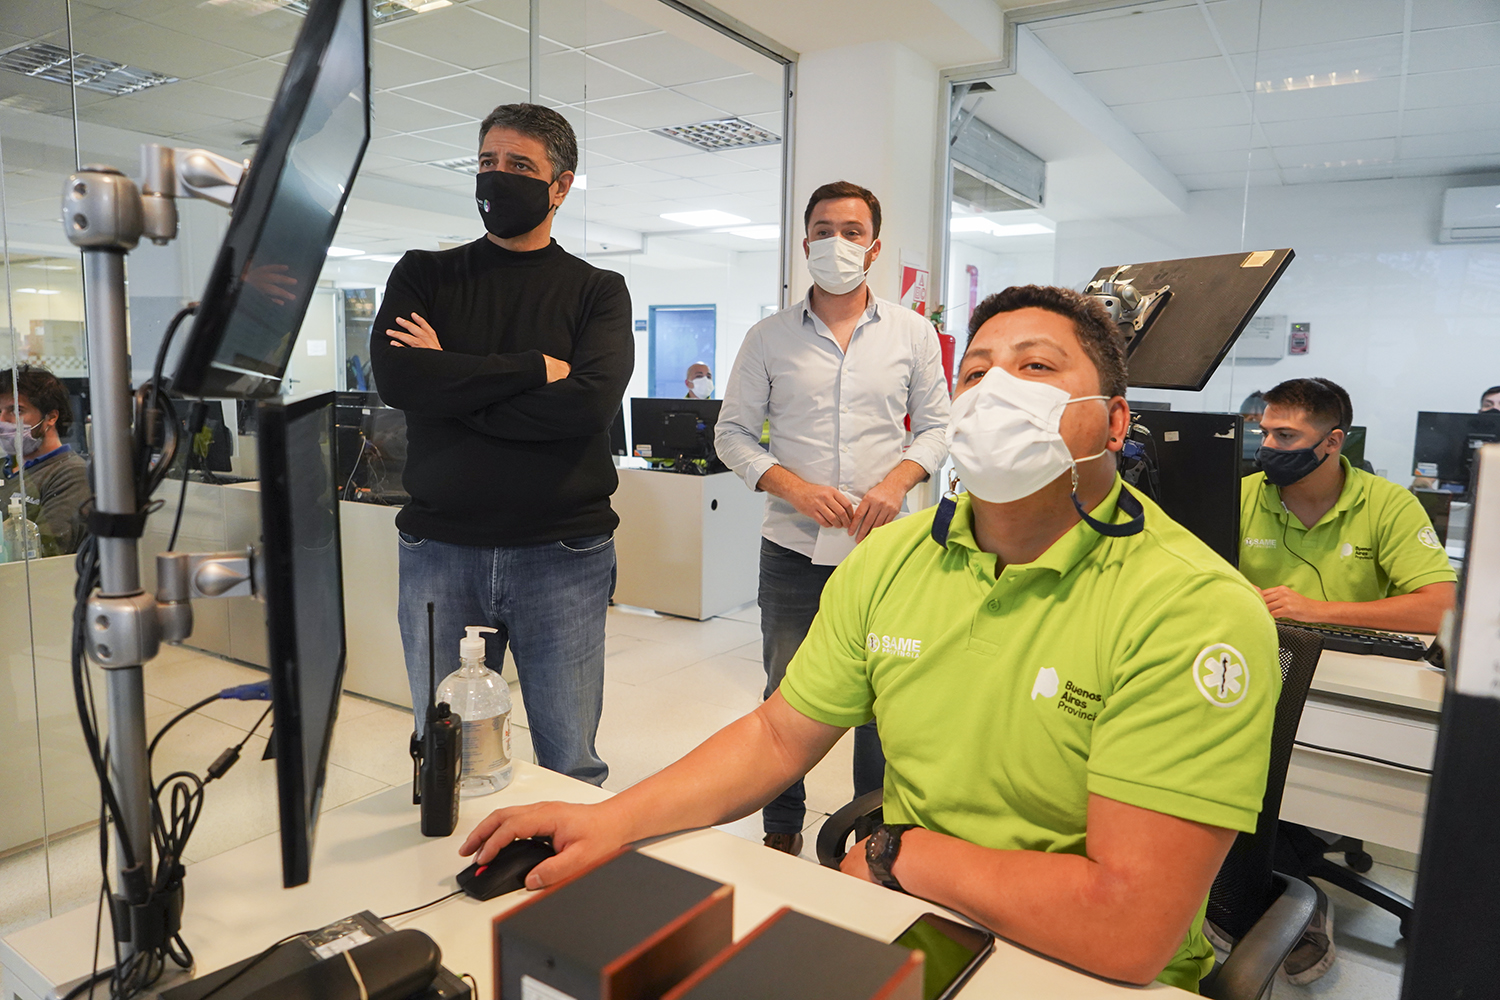  Continúa el trabajo coordinado entre los equipos de salud y seguridad frente a la pandemia